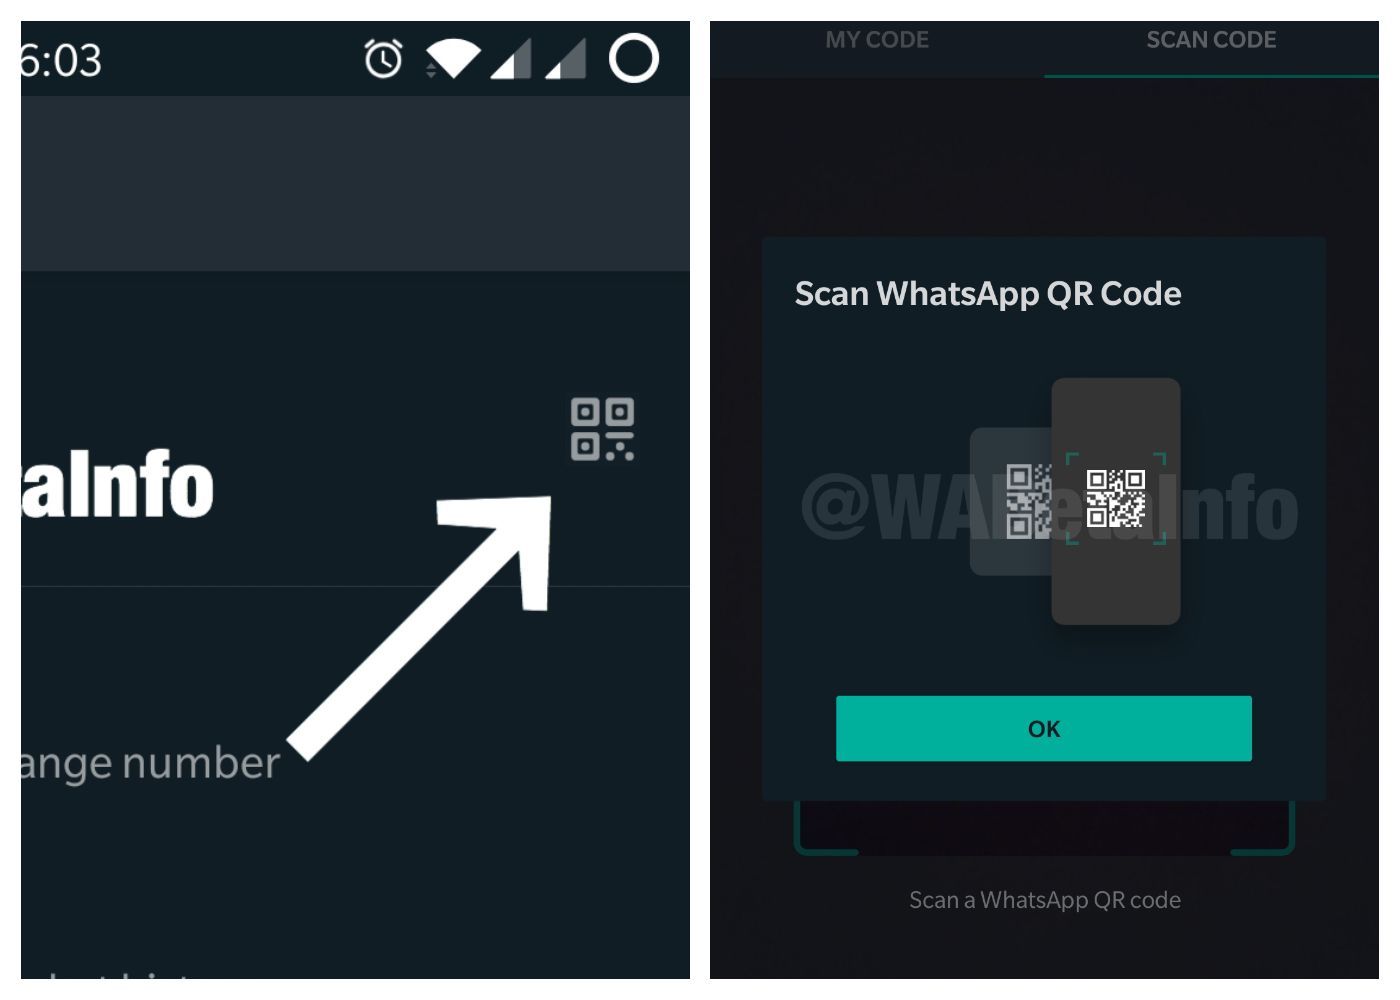 FITUR kode QR WhatsApp kini tersedia pada versi beta untuk pengguna Android.*